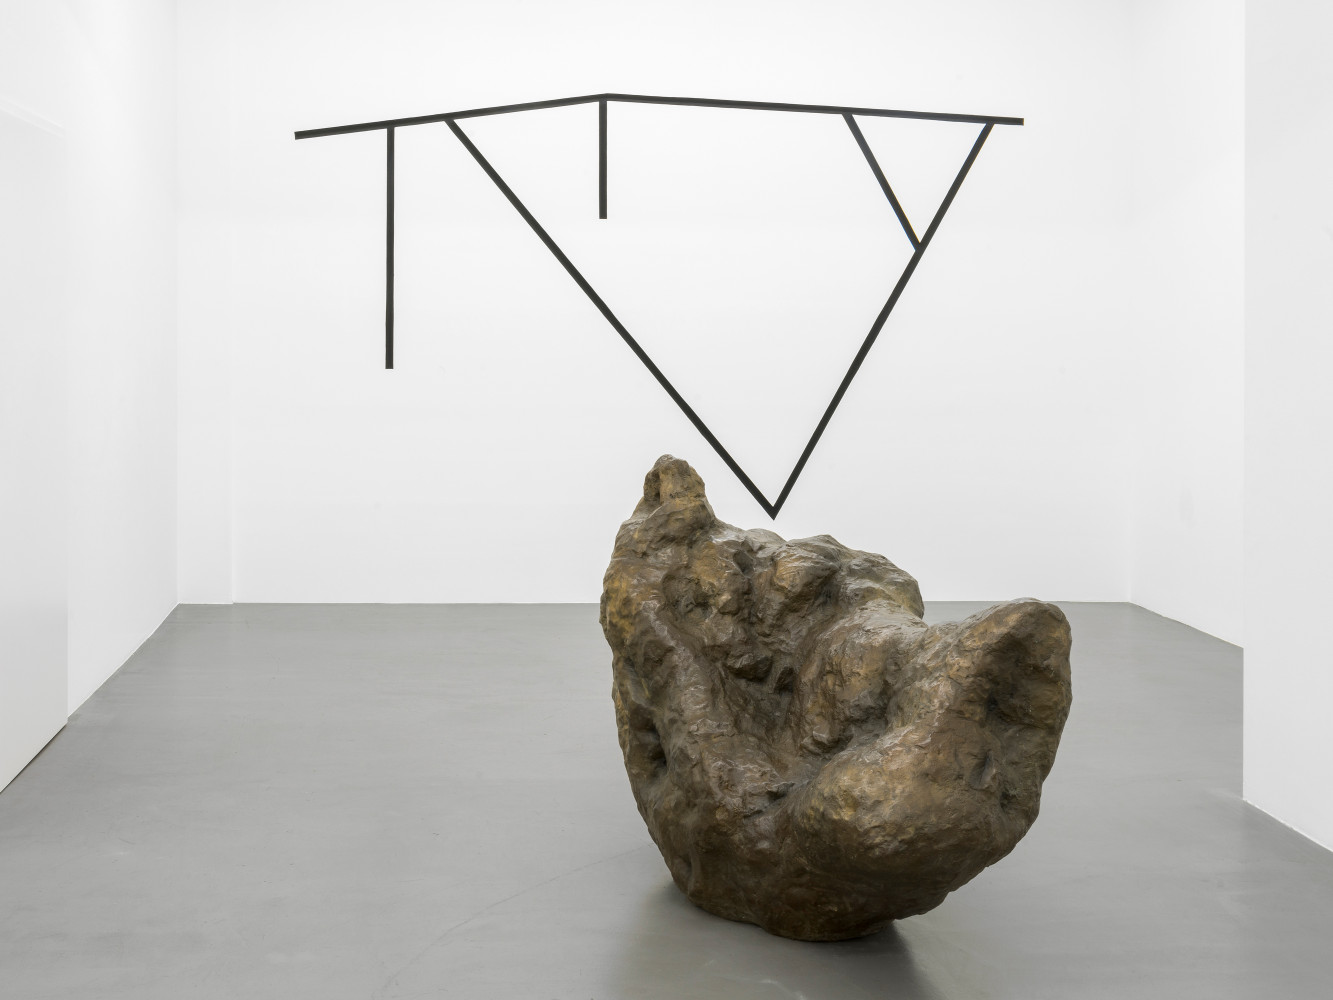 William Tucker, Installation view, Buchmann Galerie, 2020